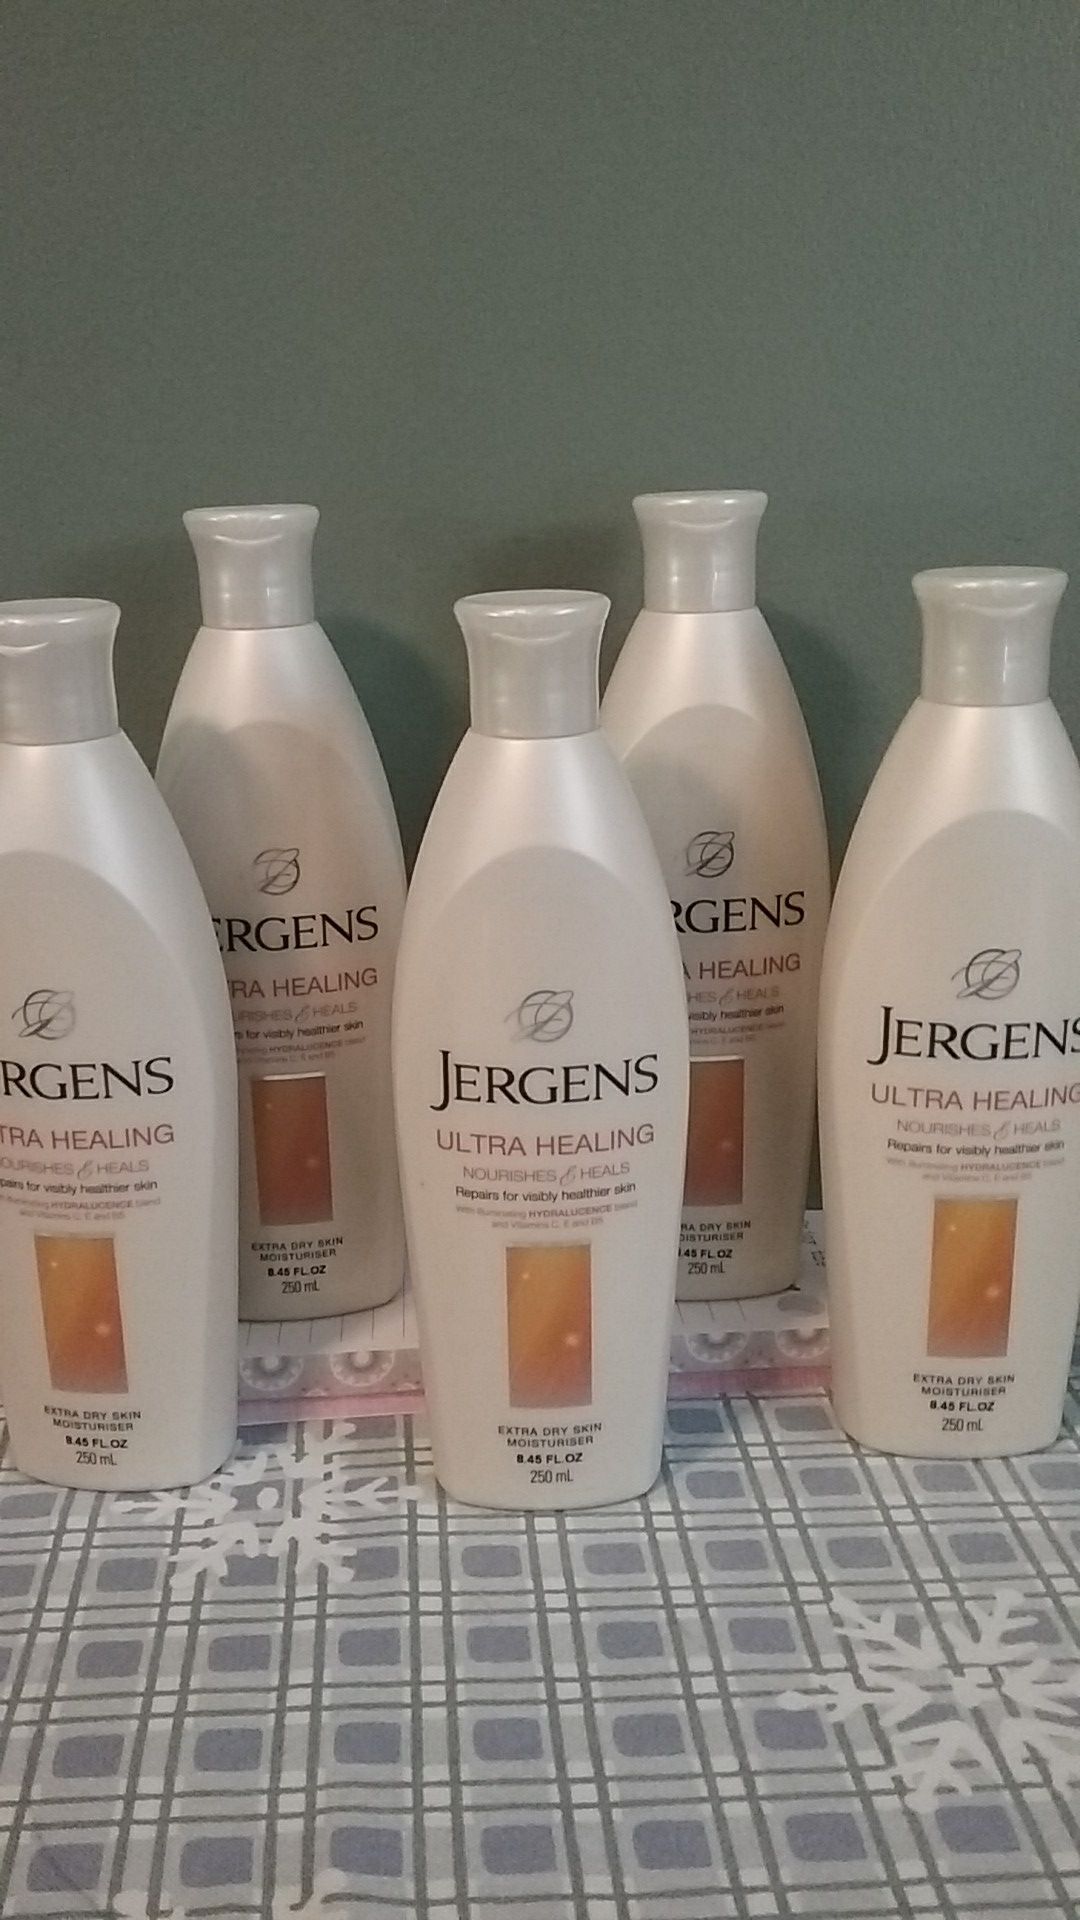 Jergens Ultra healing and heals moisturizer